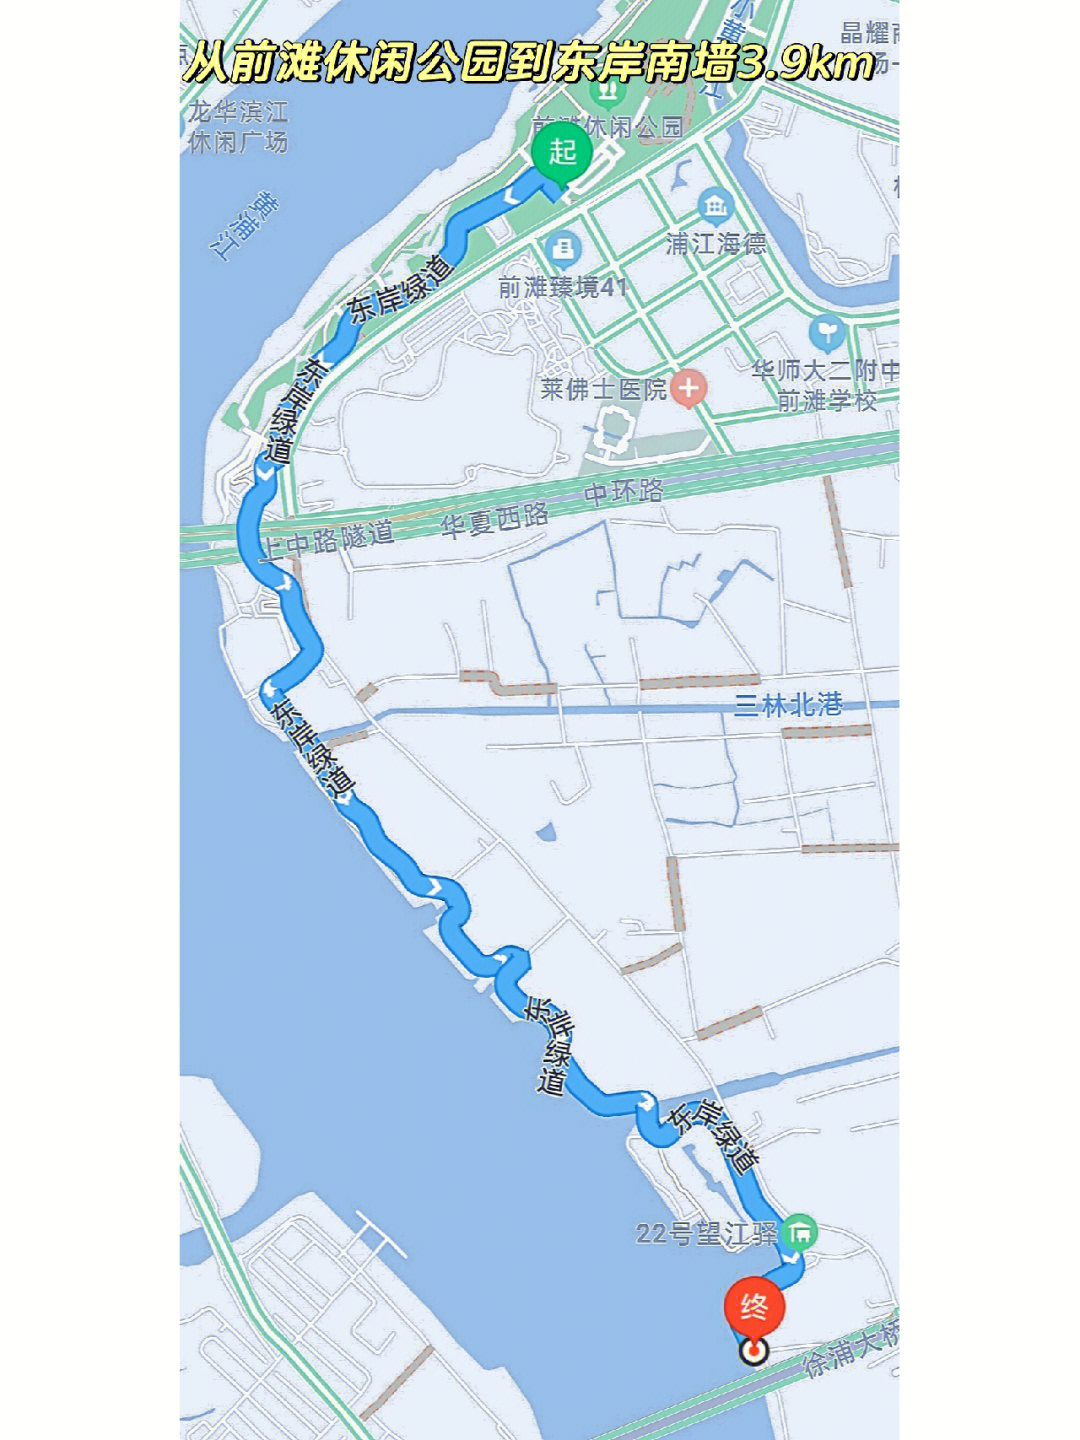 上海黄浦江骑行路线图图片